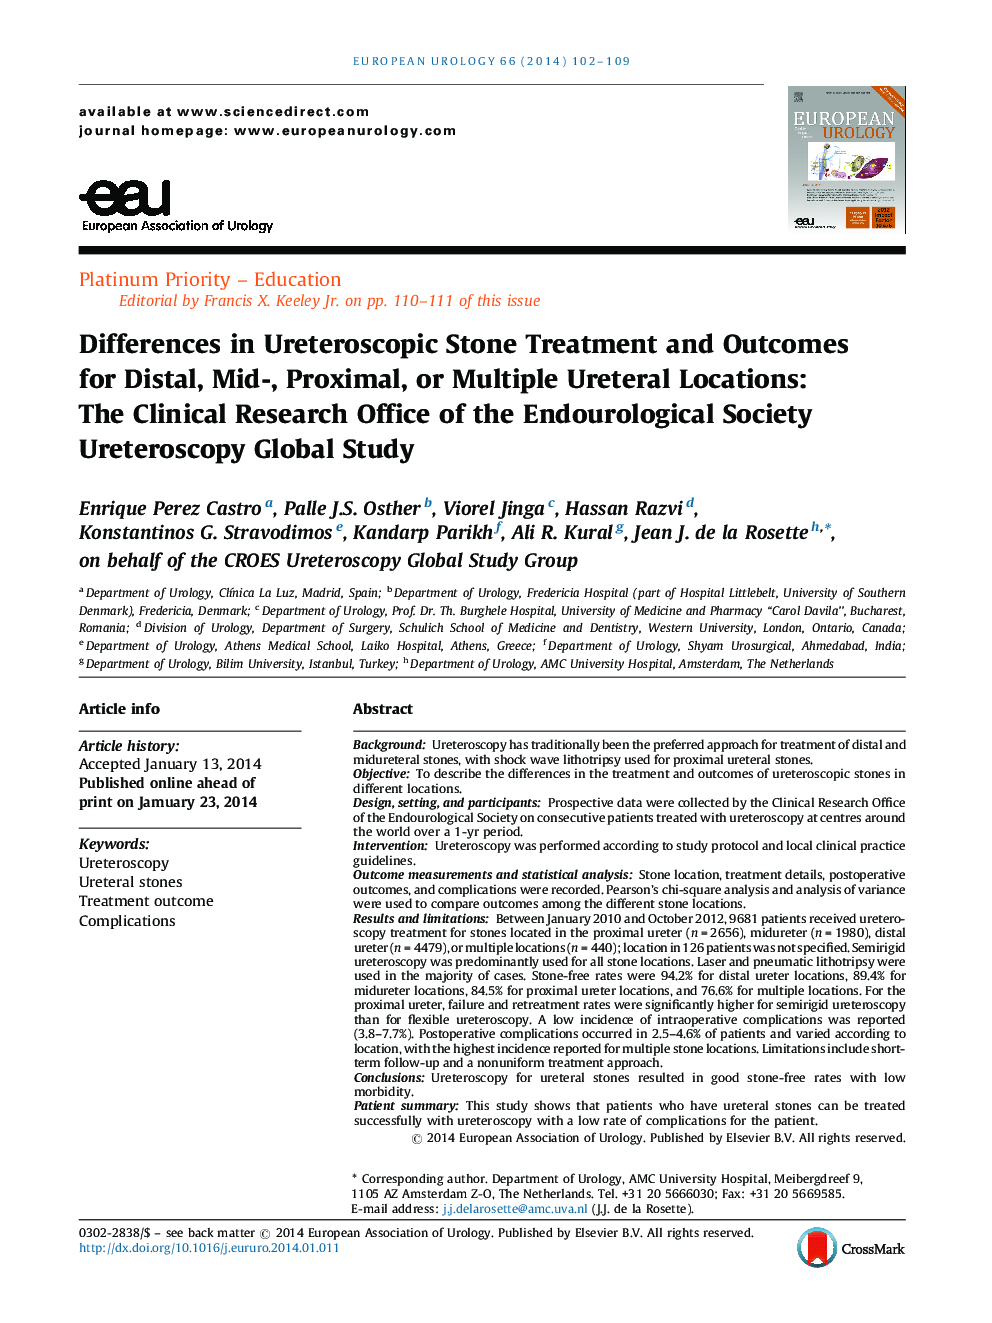 تفاوت در درمان سنگ های اورترسکوپی و نتایج آن برای محل های دیاستال، میانی، پروگزیمال یا چندگانه مجاری ادرار: دفتر تحقیقات بالینی انجمن آندرولوژیک، مطالعه اورتروسکوپی جهانی 